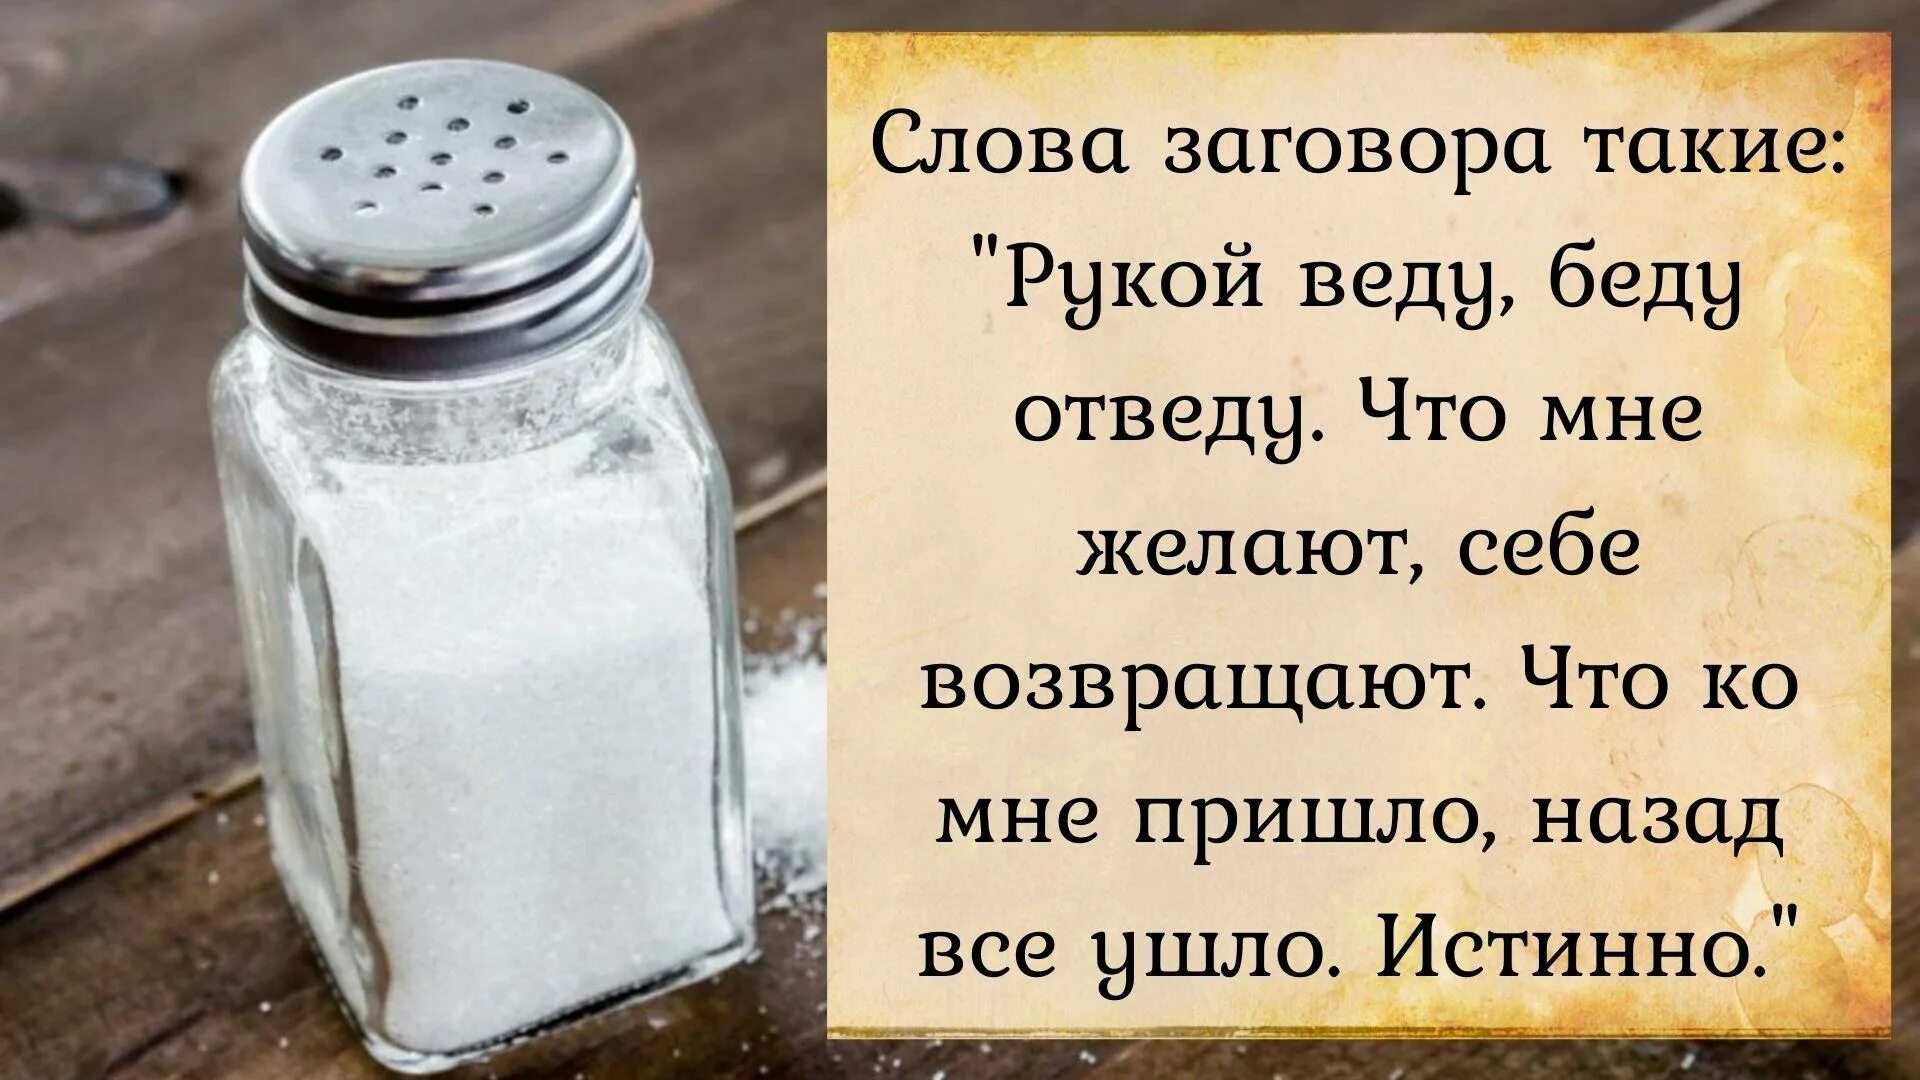 Купить можно всегда. Заговор на соль. Заклинание на соль. Защитный заговор на соль. Соль заговорить на защиту.